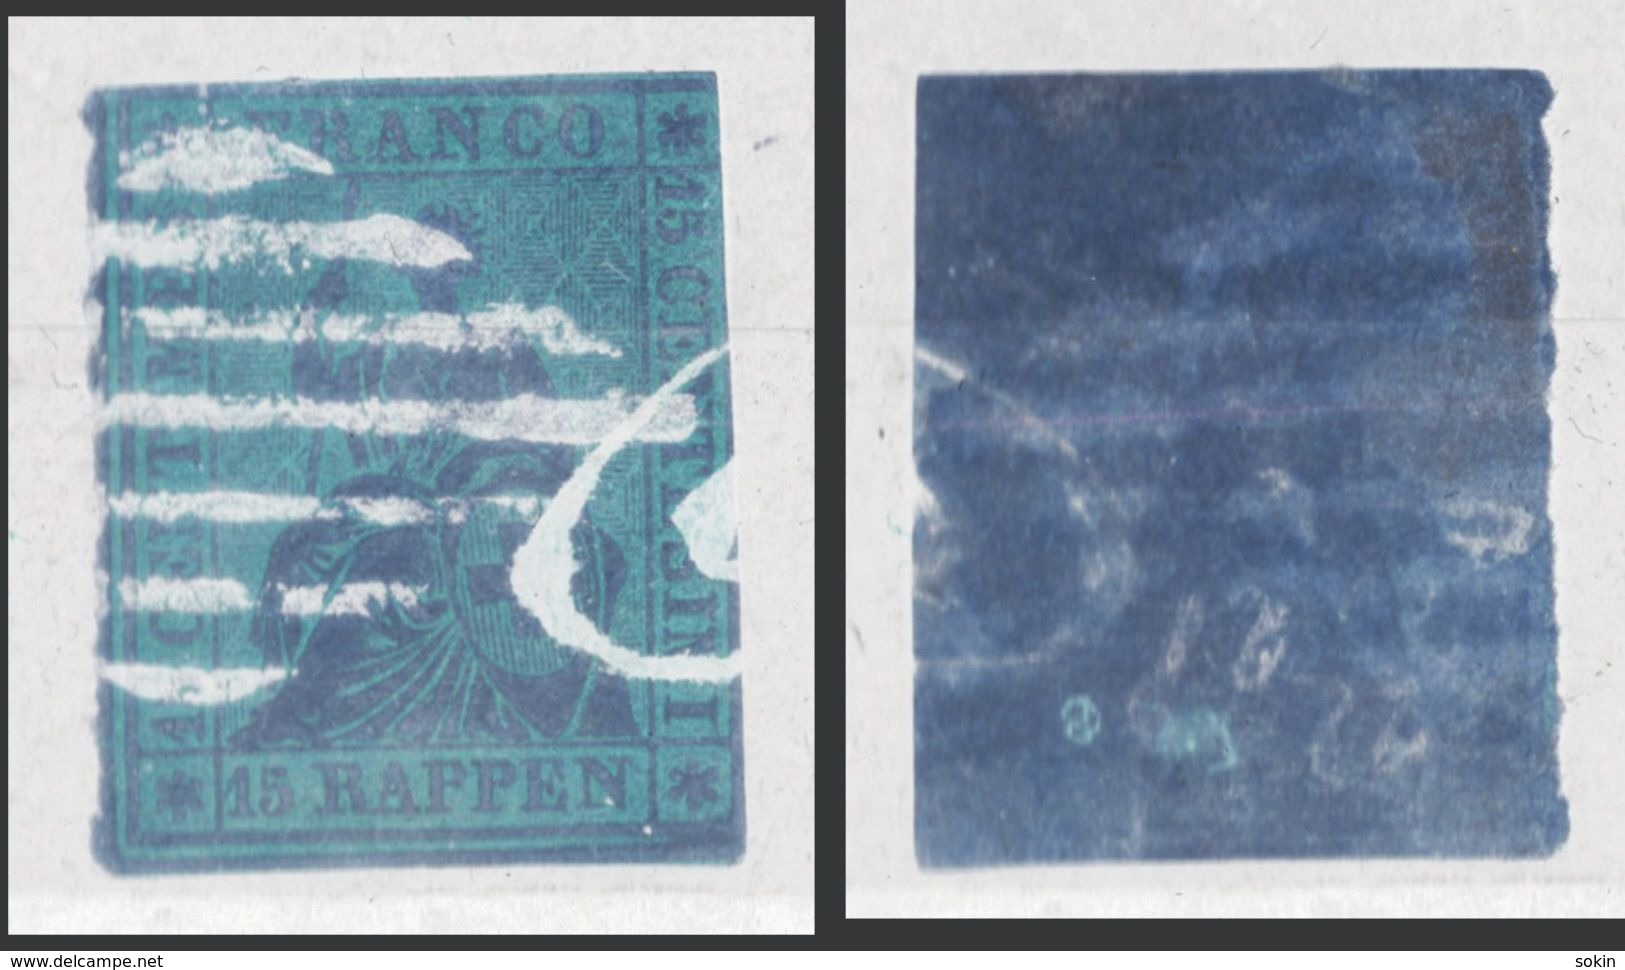 SVIZZERA - HELVETIA - (Vedere Fotografia) (See Photo) - 1962-81 - 15r Rosa - Used Stamps